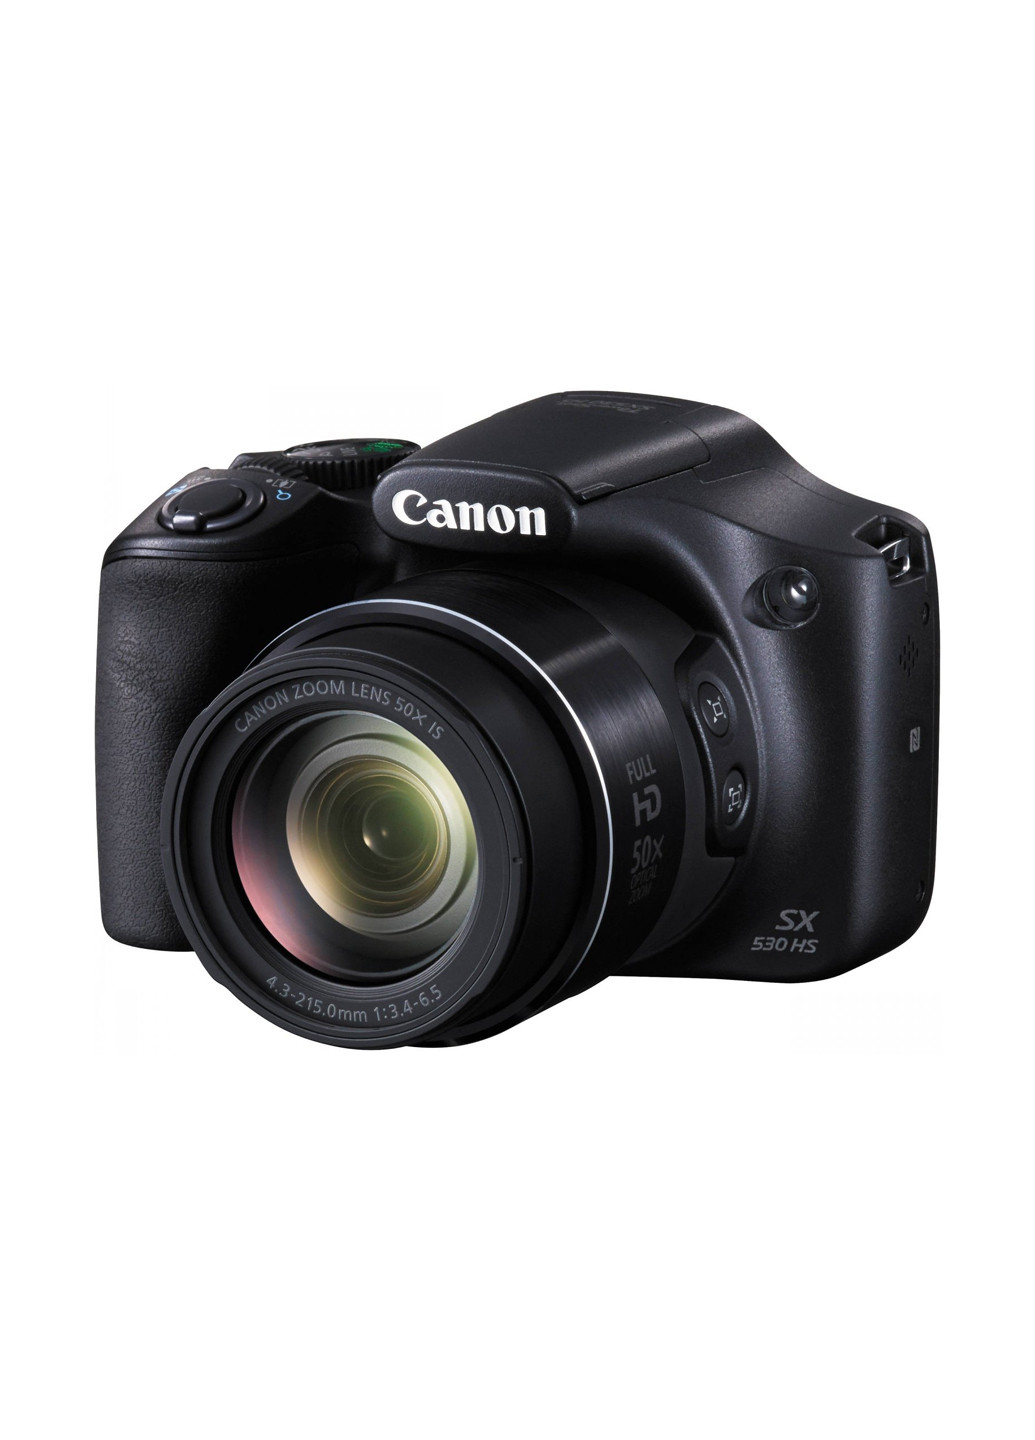 Компактная фотокамера Canon Powershot SX530 HS Black чёрная